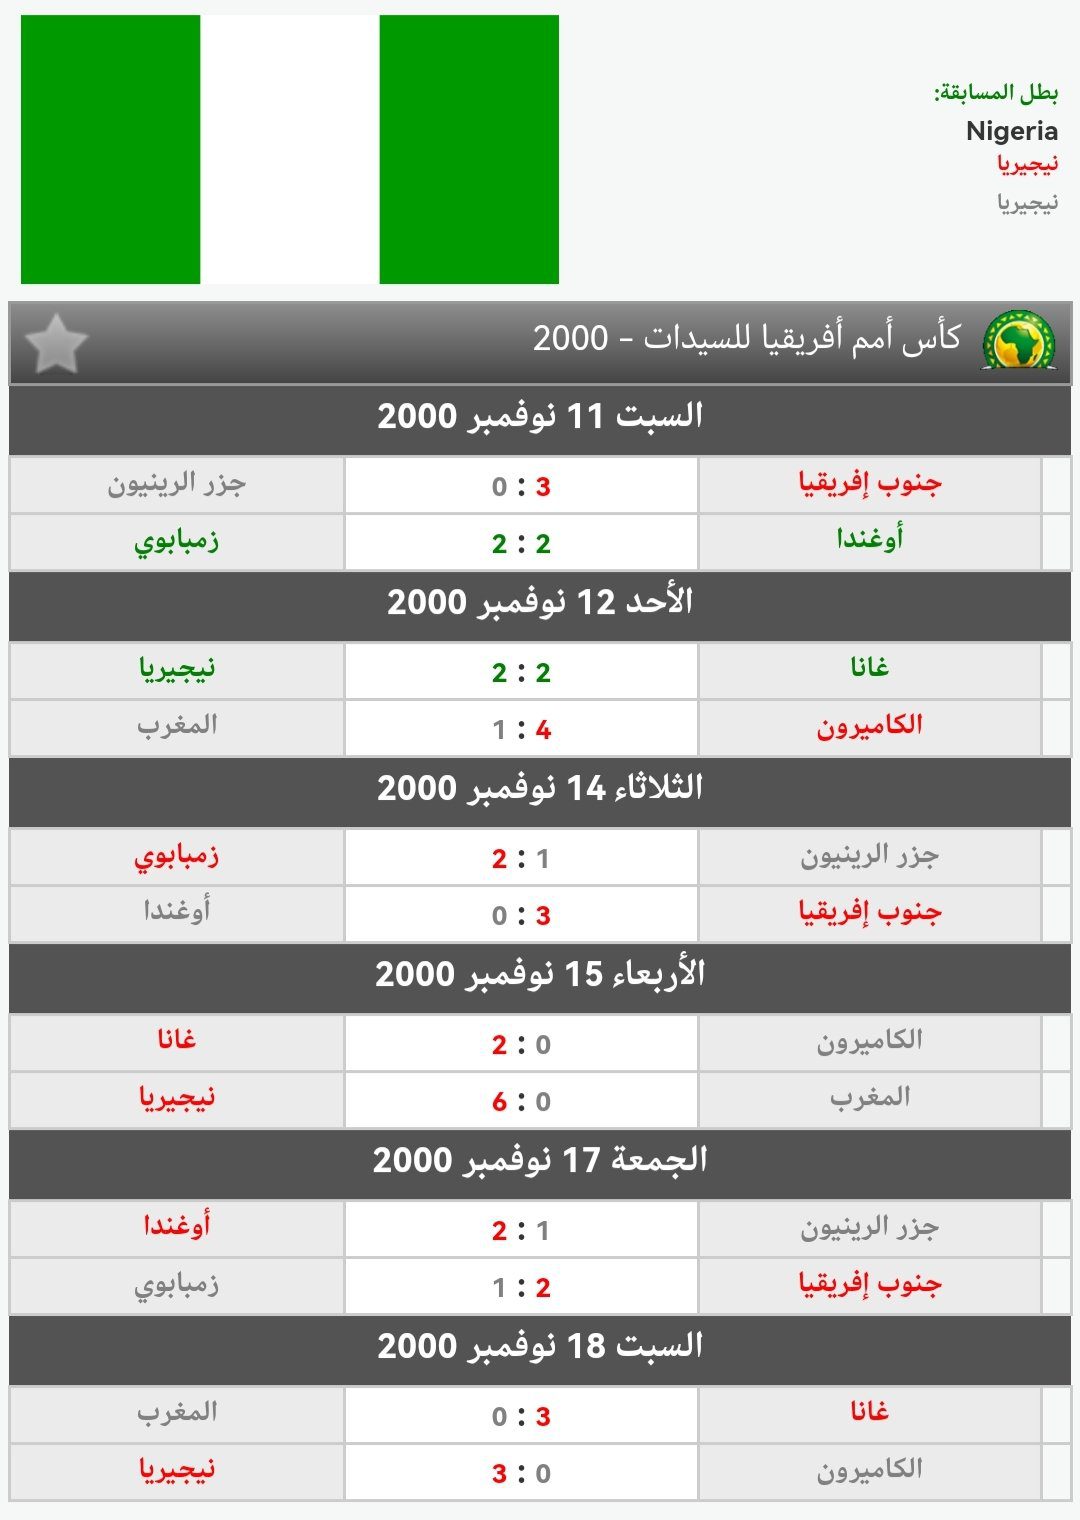 نتائج المغرب في كأس أمم إفريقيا 2000